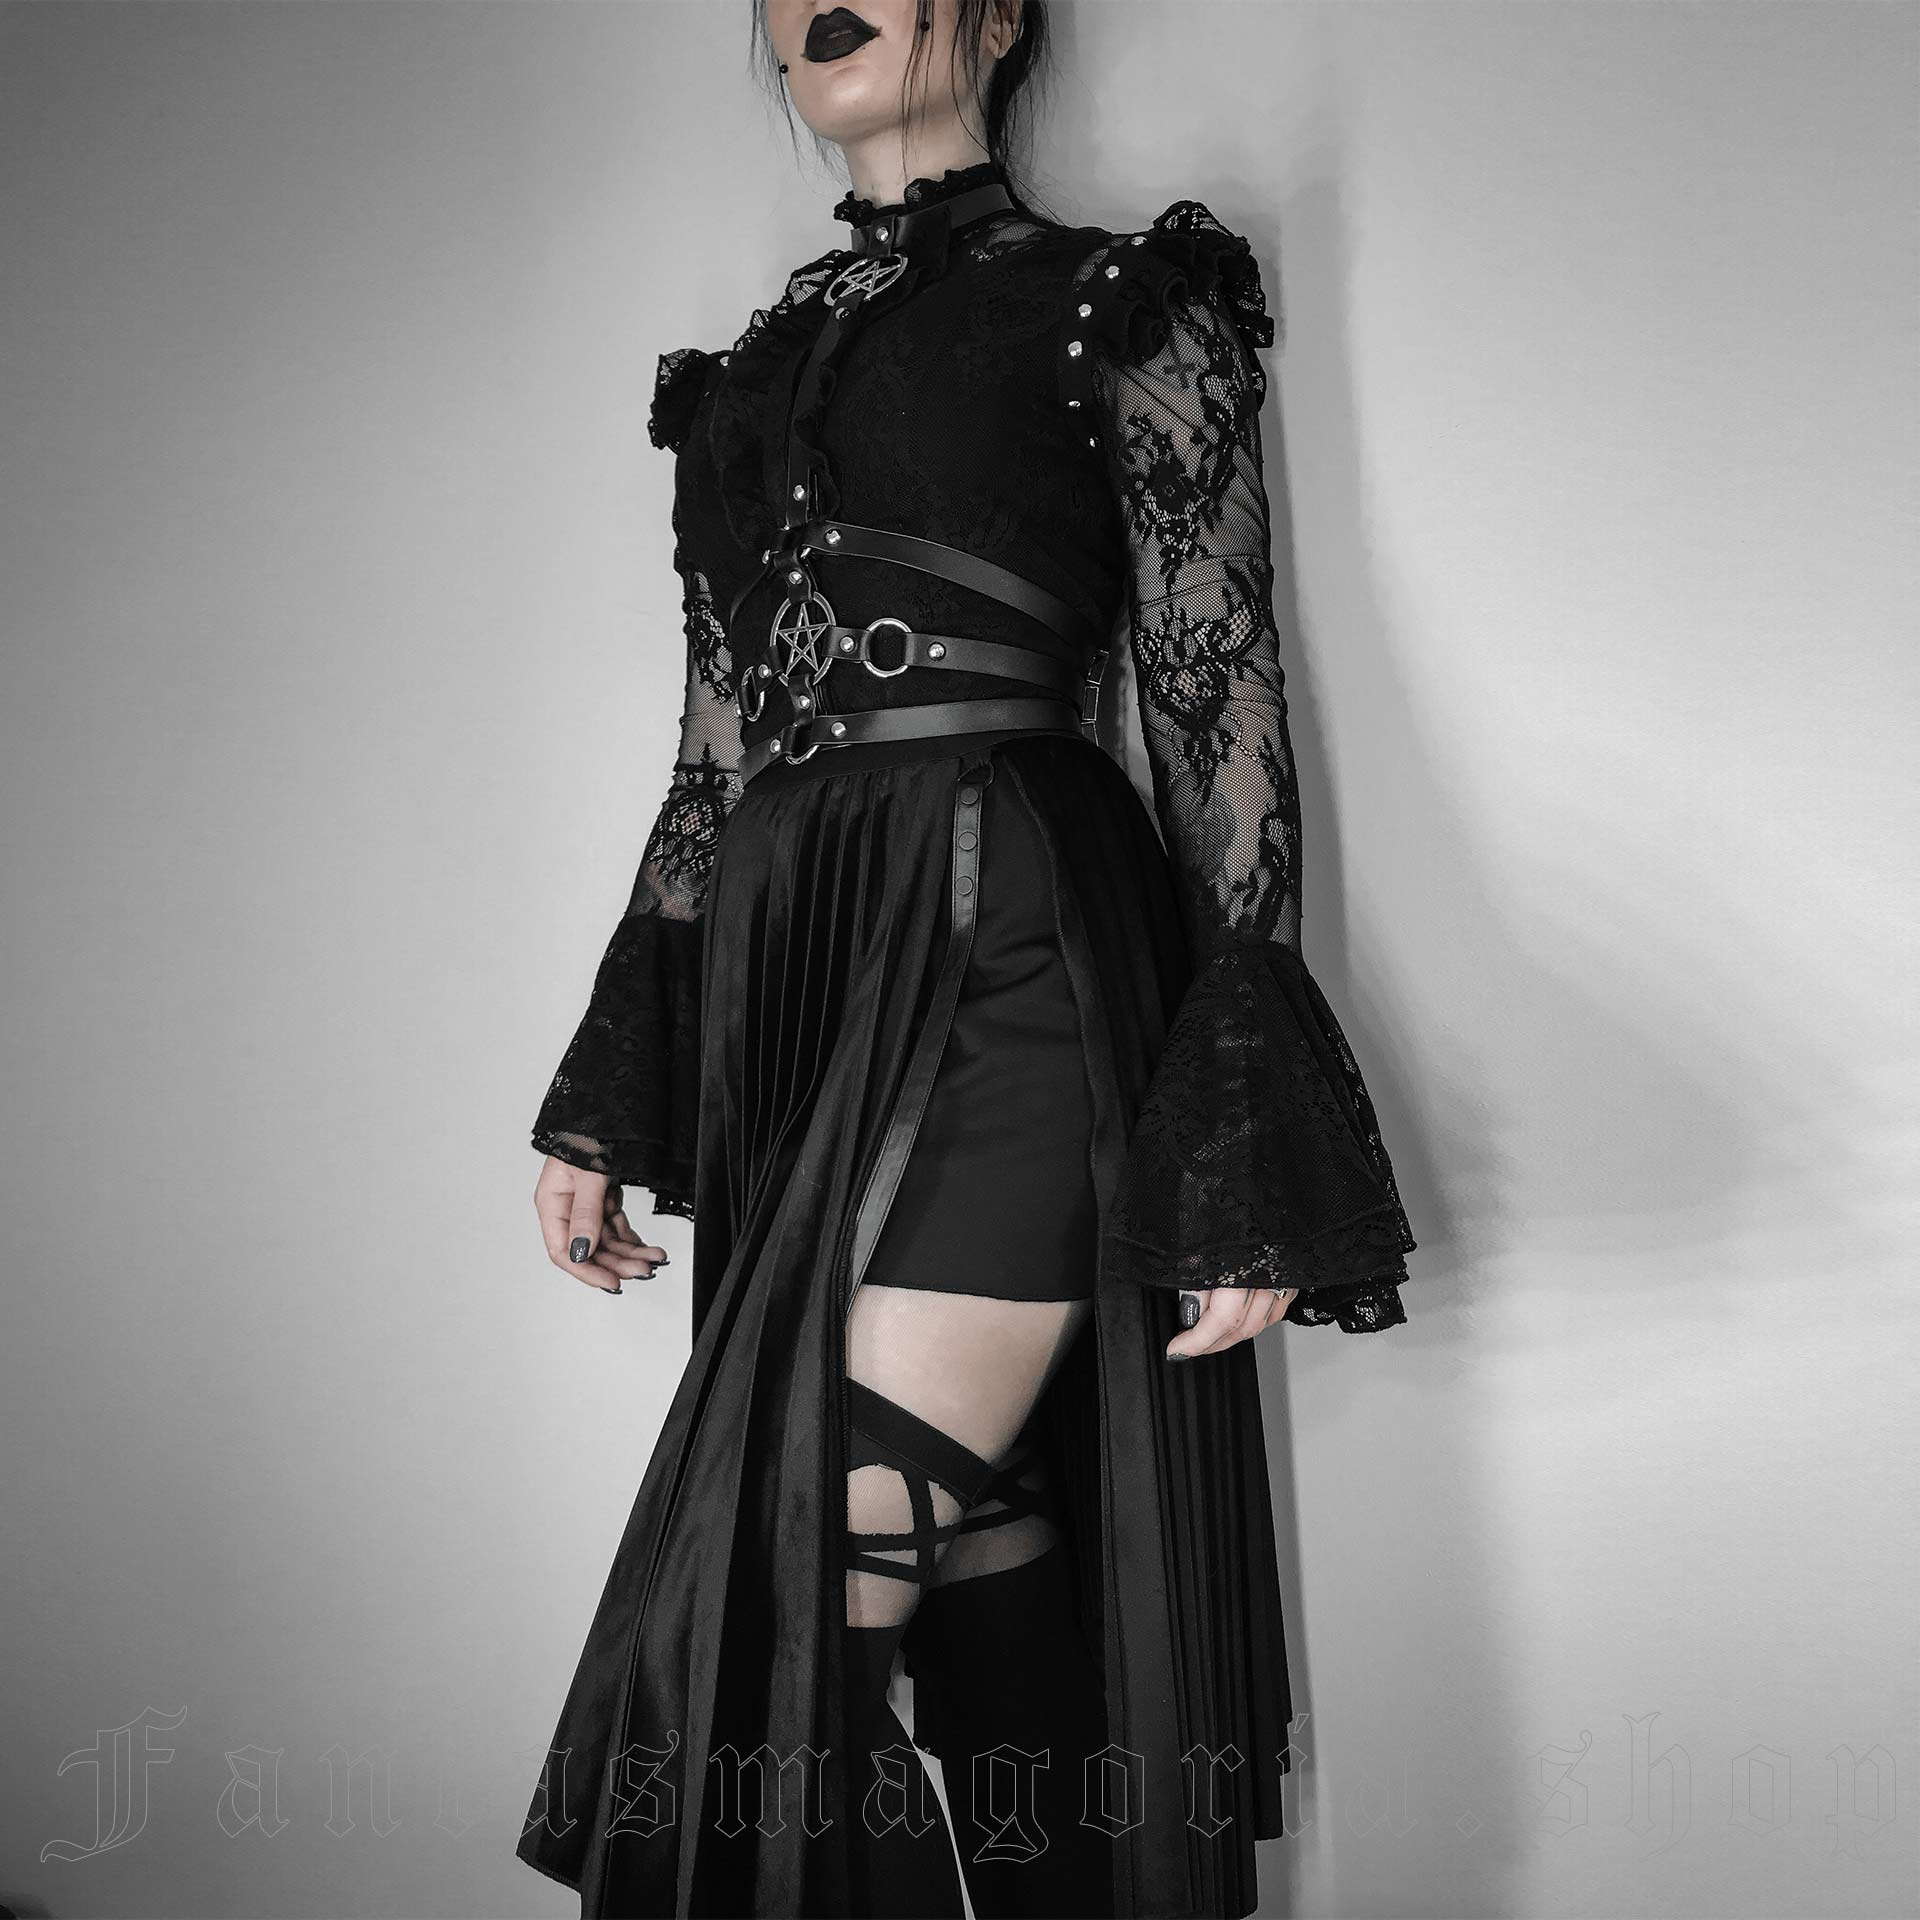 Punk Rave Black Gothic Punk Split Skirt for Women